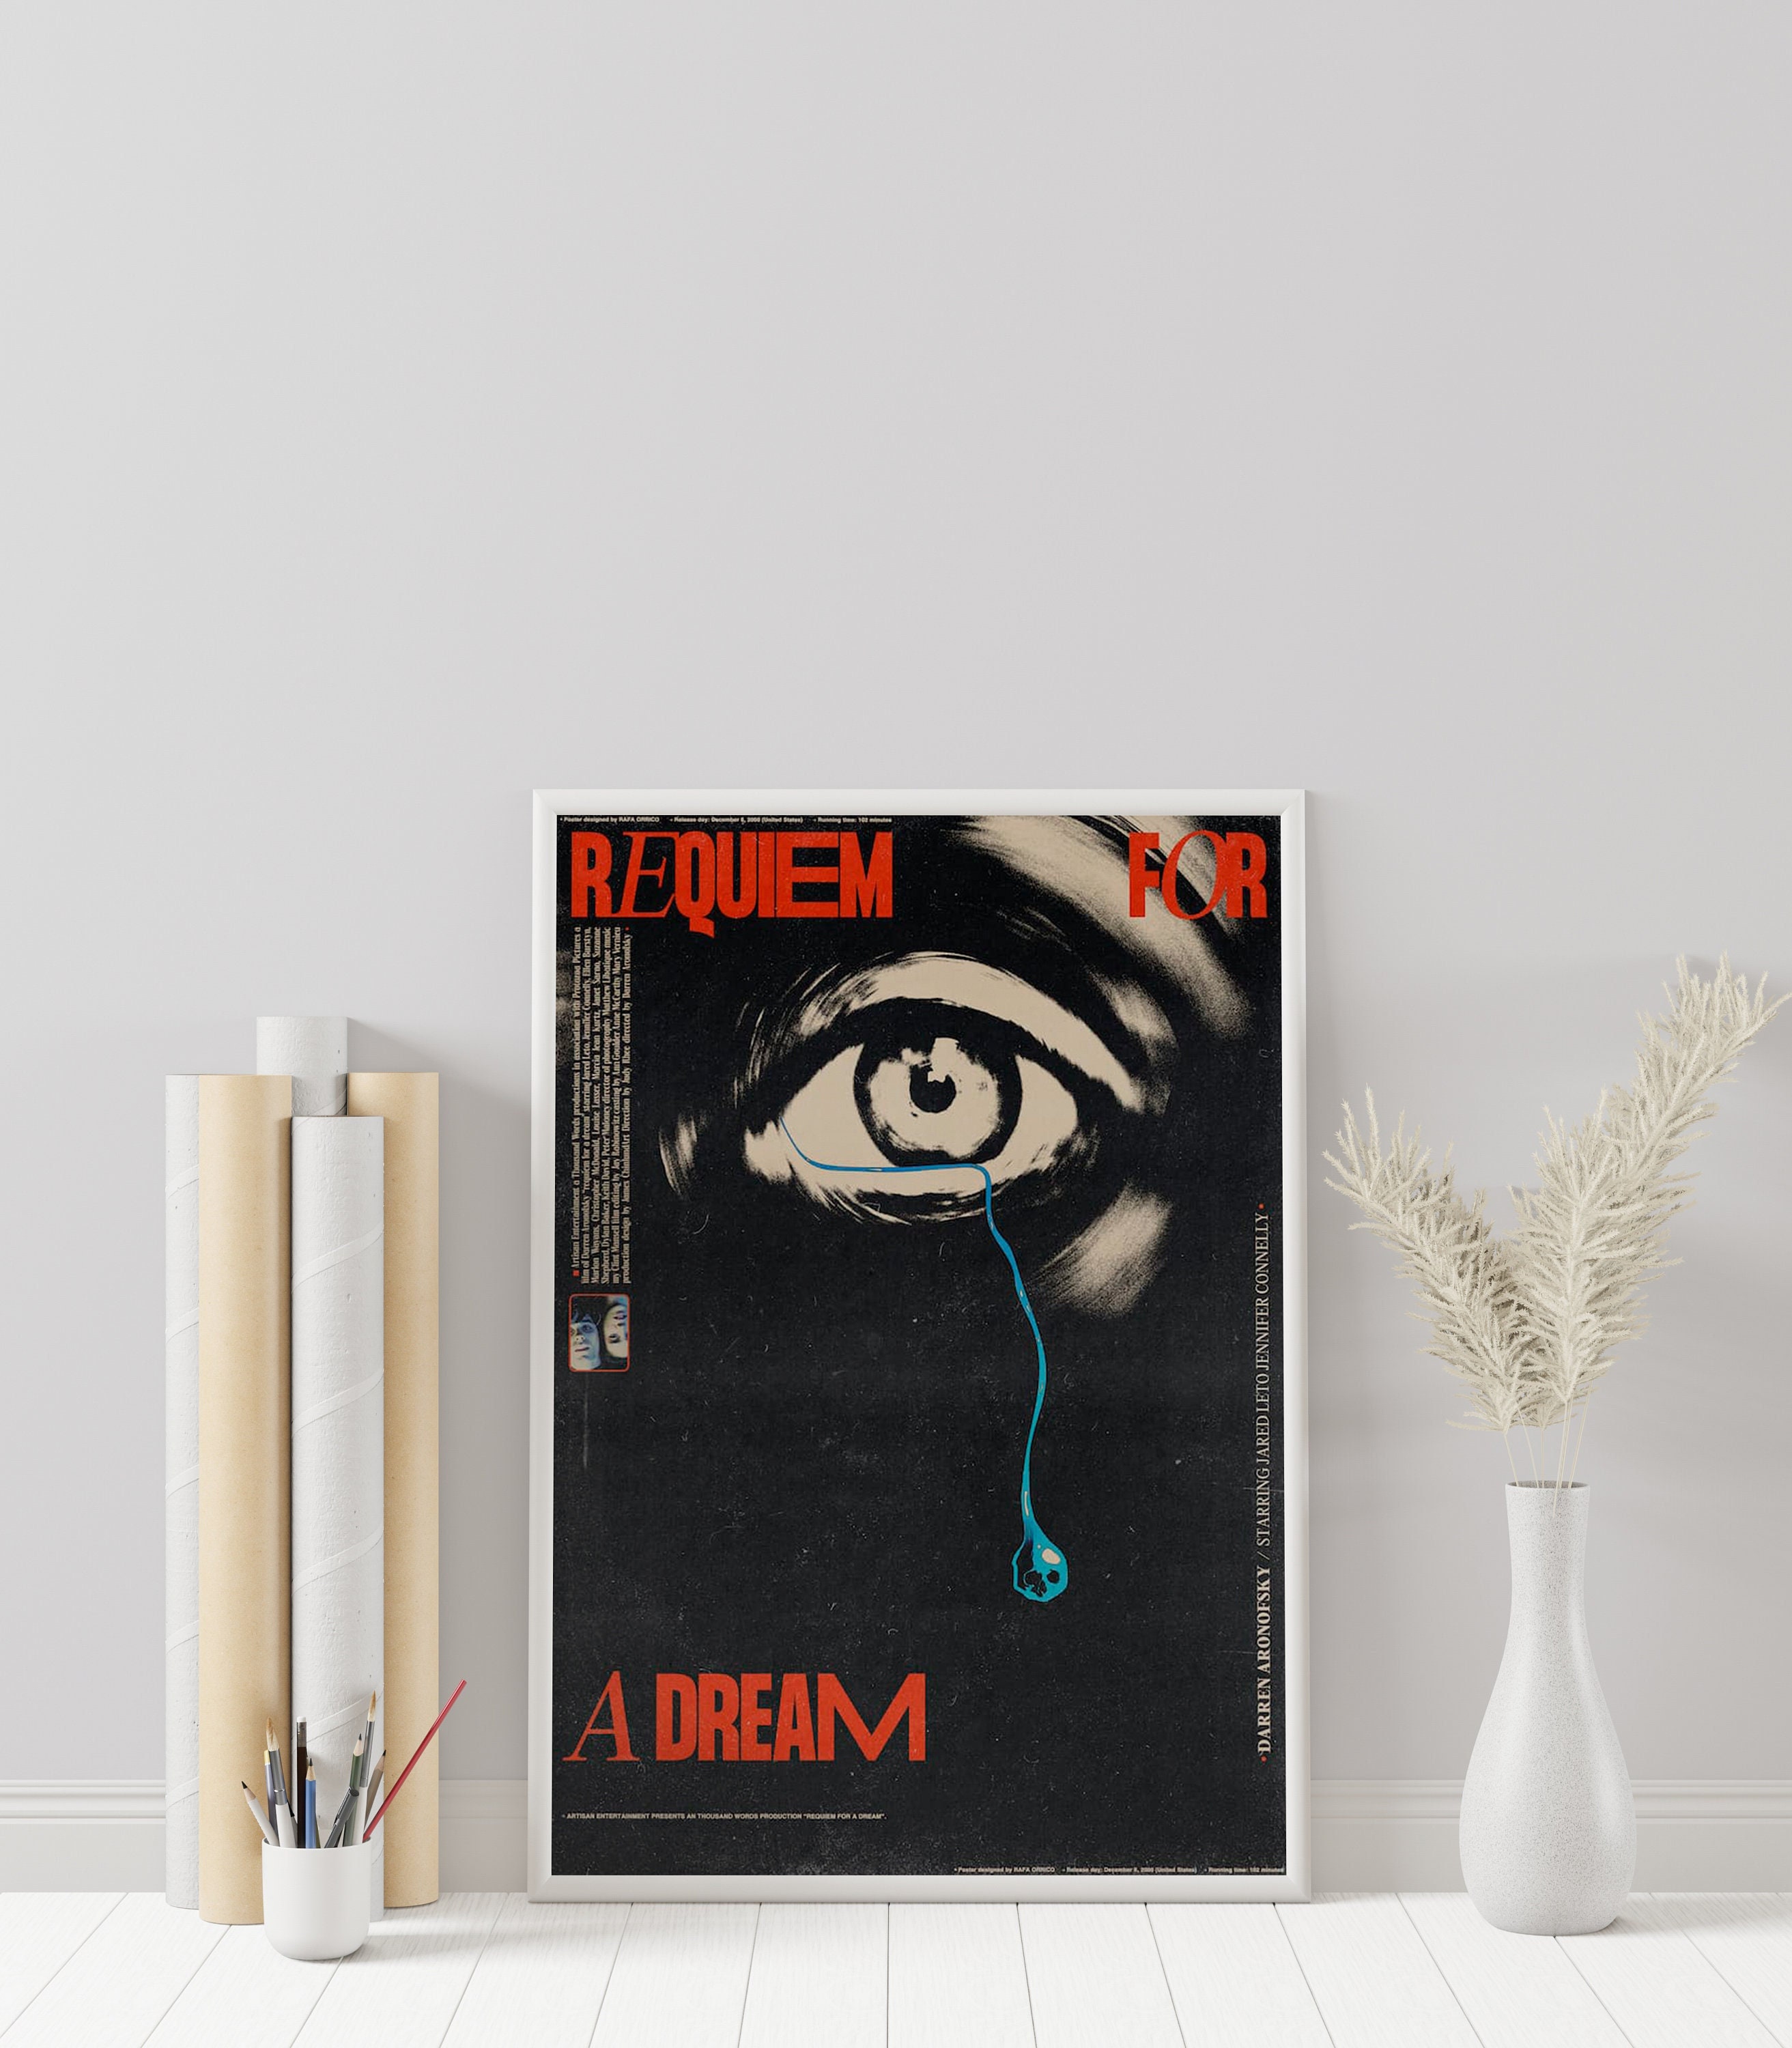 Quadro e poster Requiem For A Dream - Quadrorama